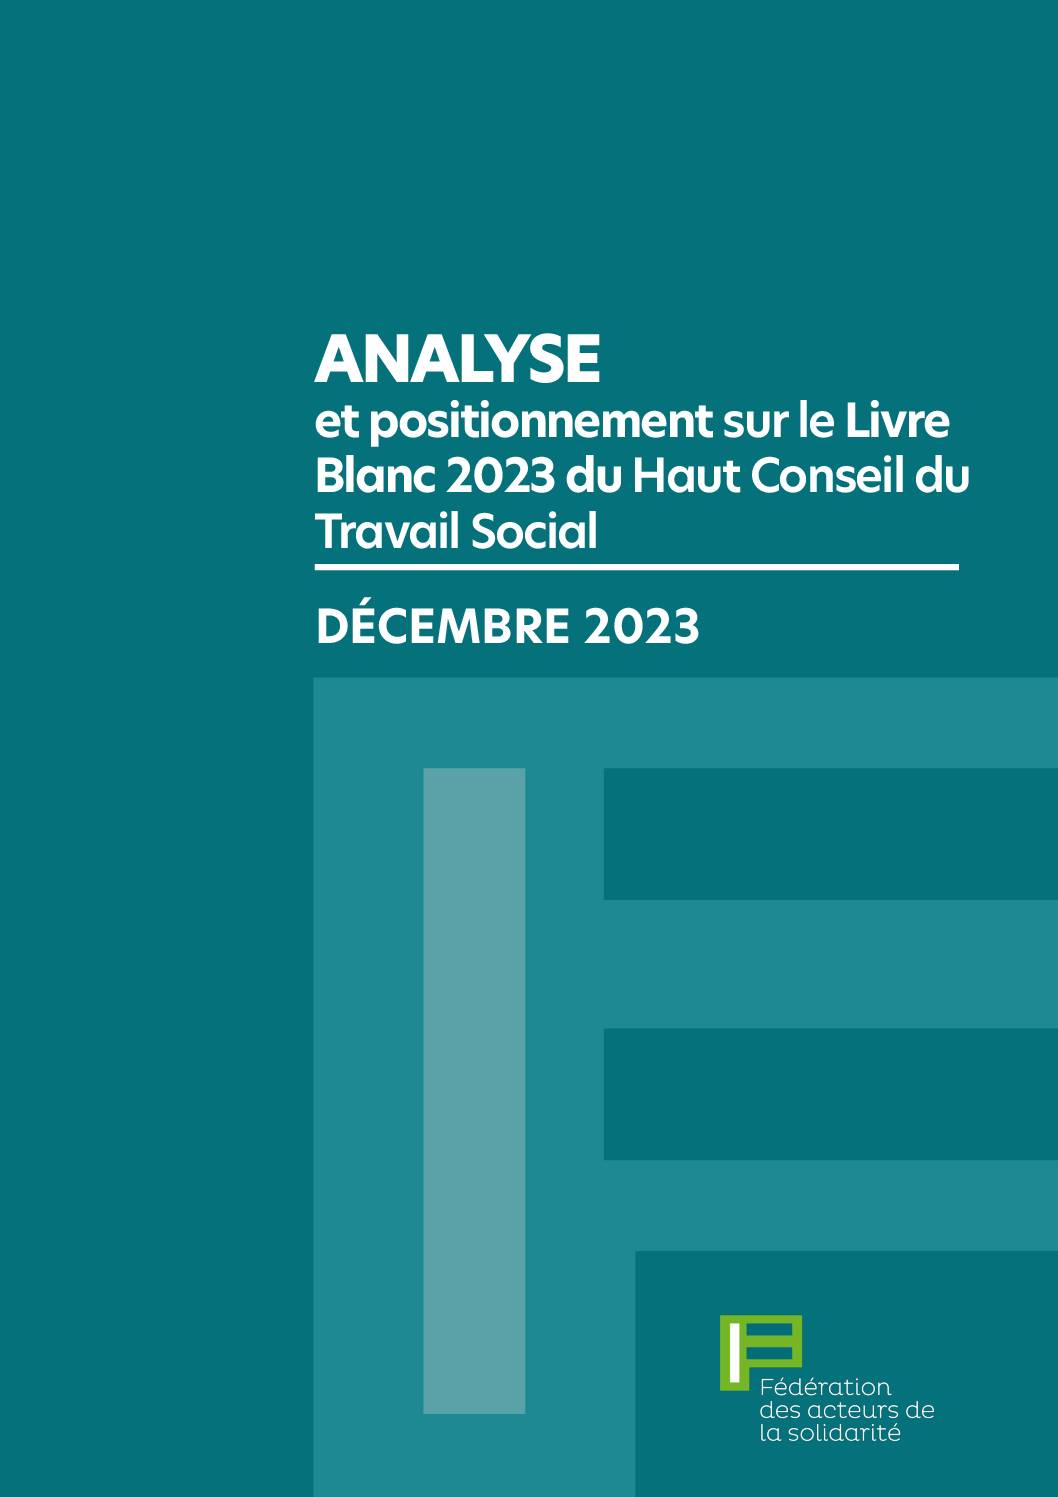 Analyse et positionnement sur le Livre Blanc du Travail Social 2023 Haut Conseil du Travail Social